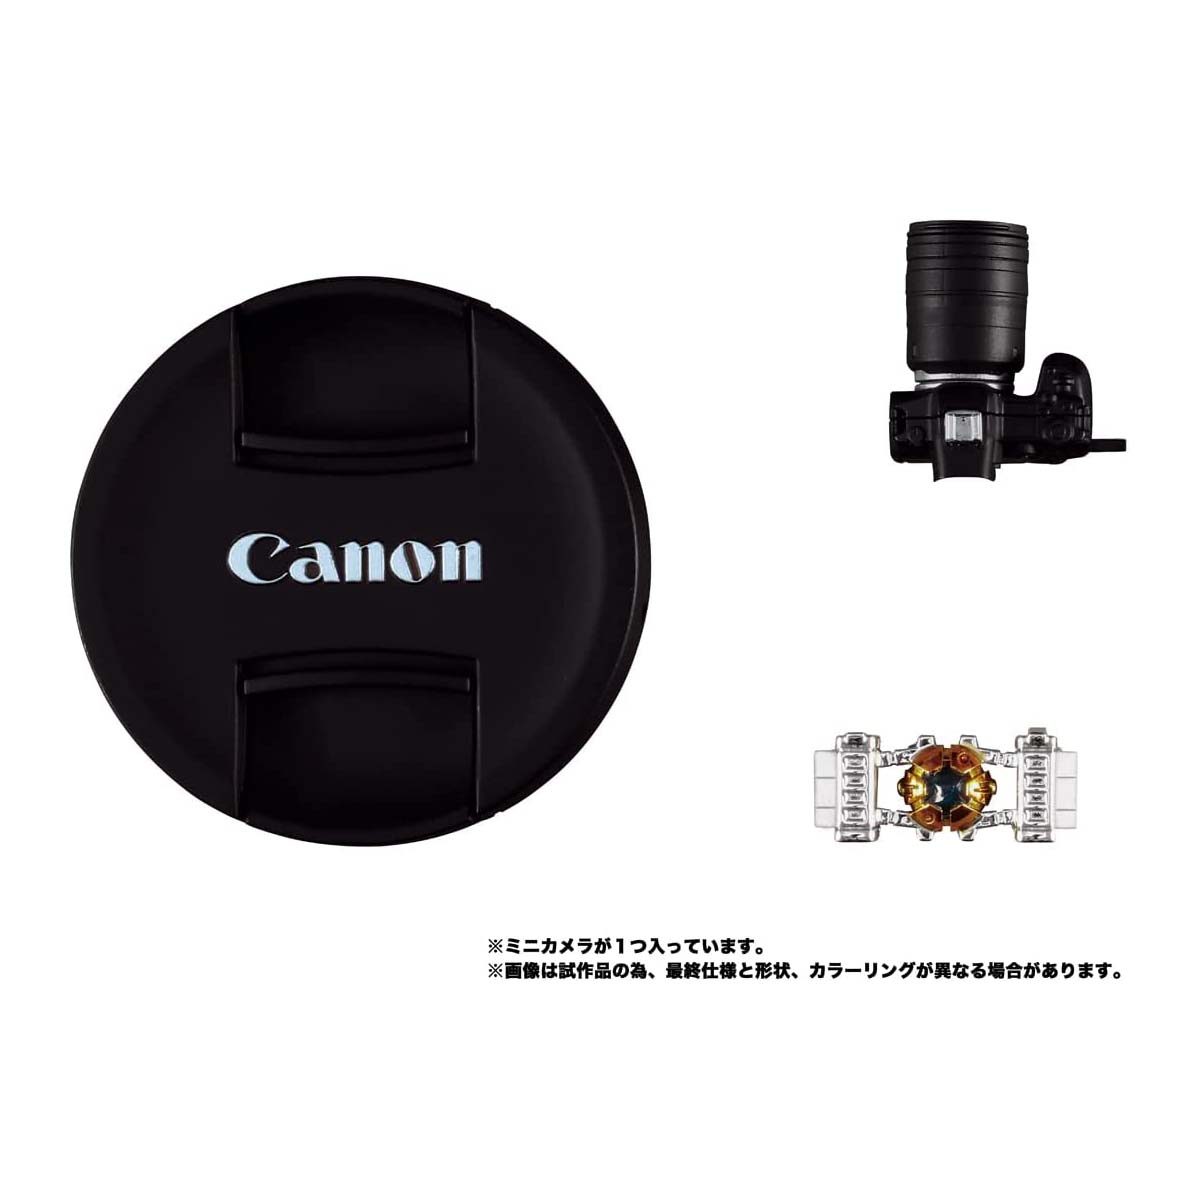 トランスフォーマー『Canon/TRANSFORMERS オプティマスプライムR5』可変可動フィギュア-010